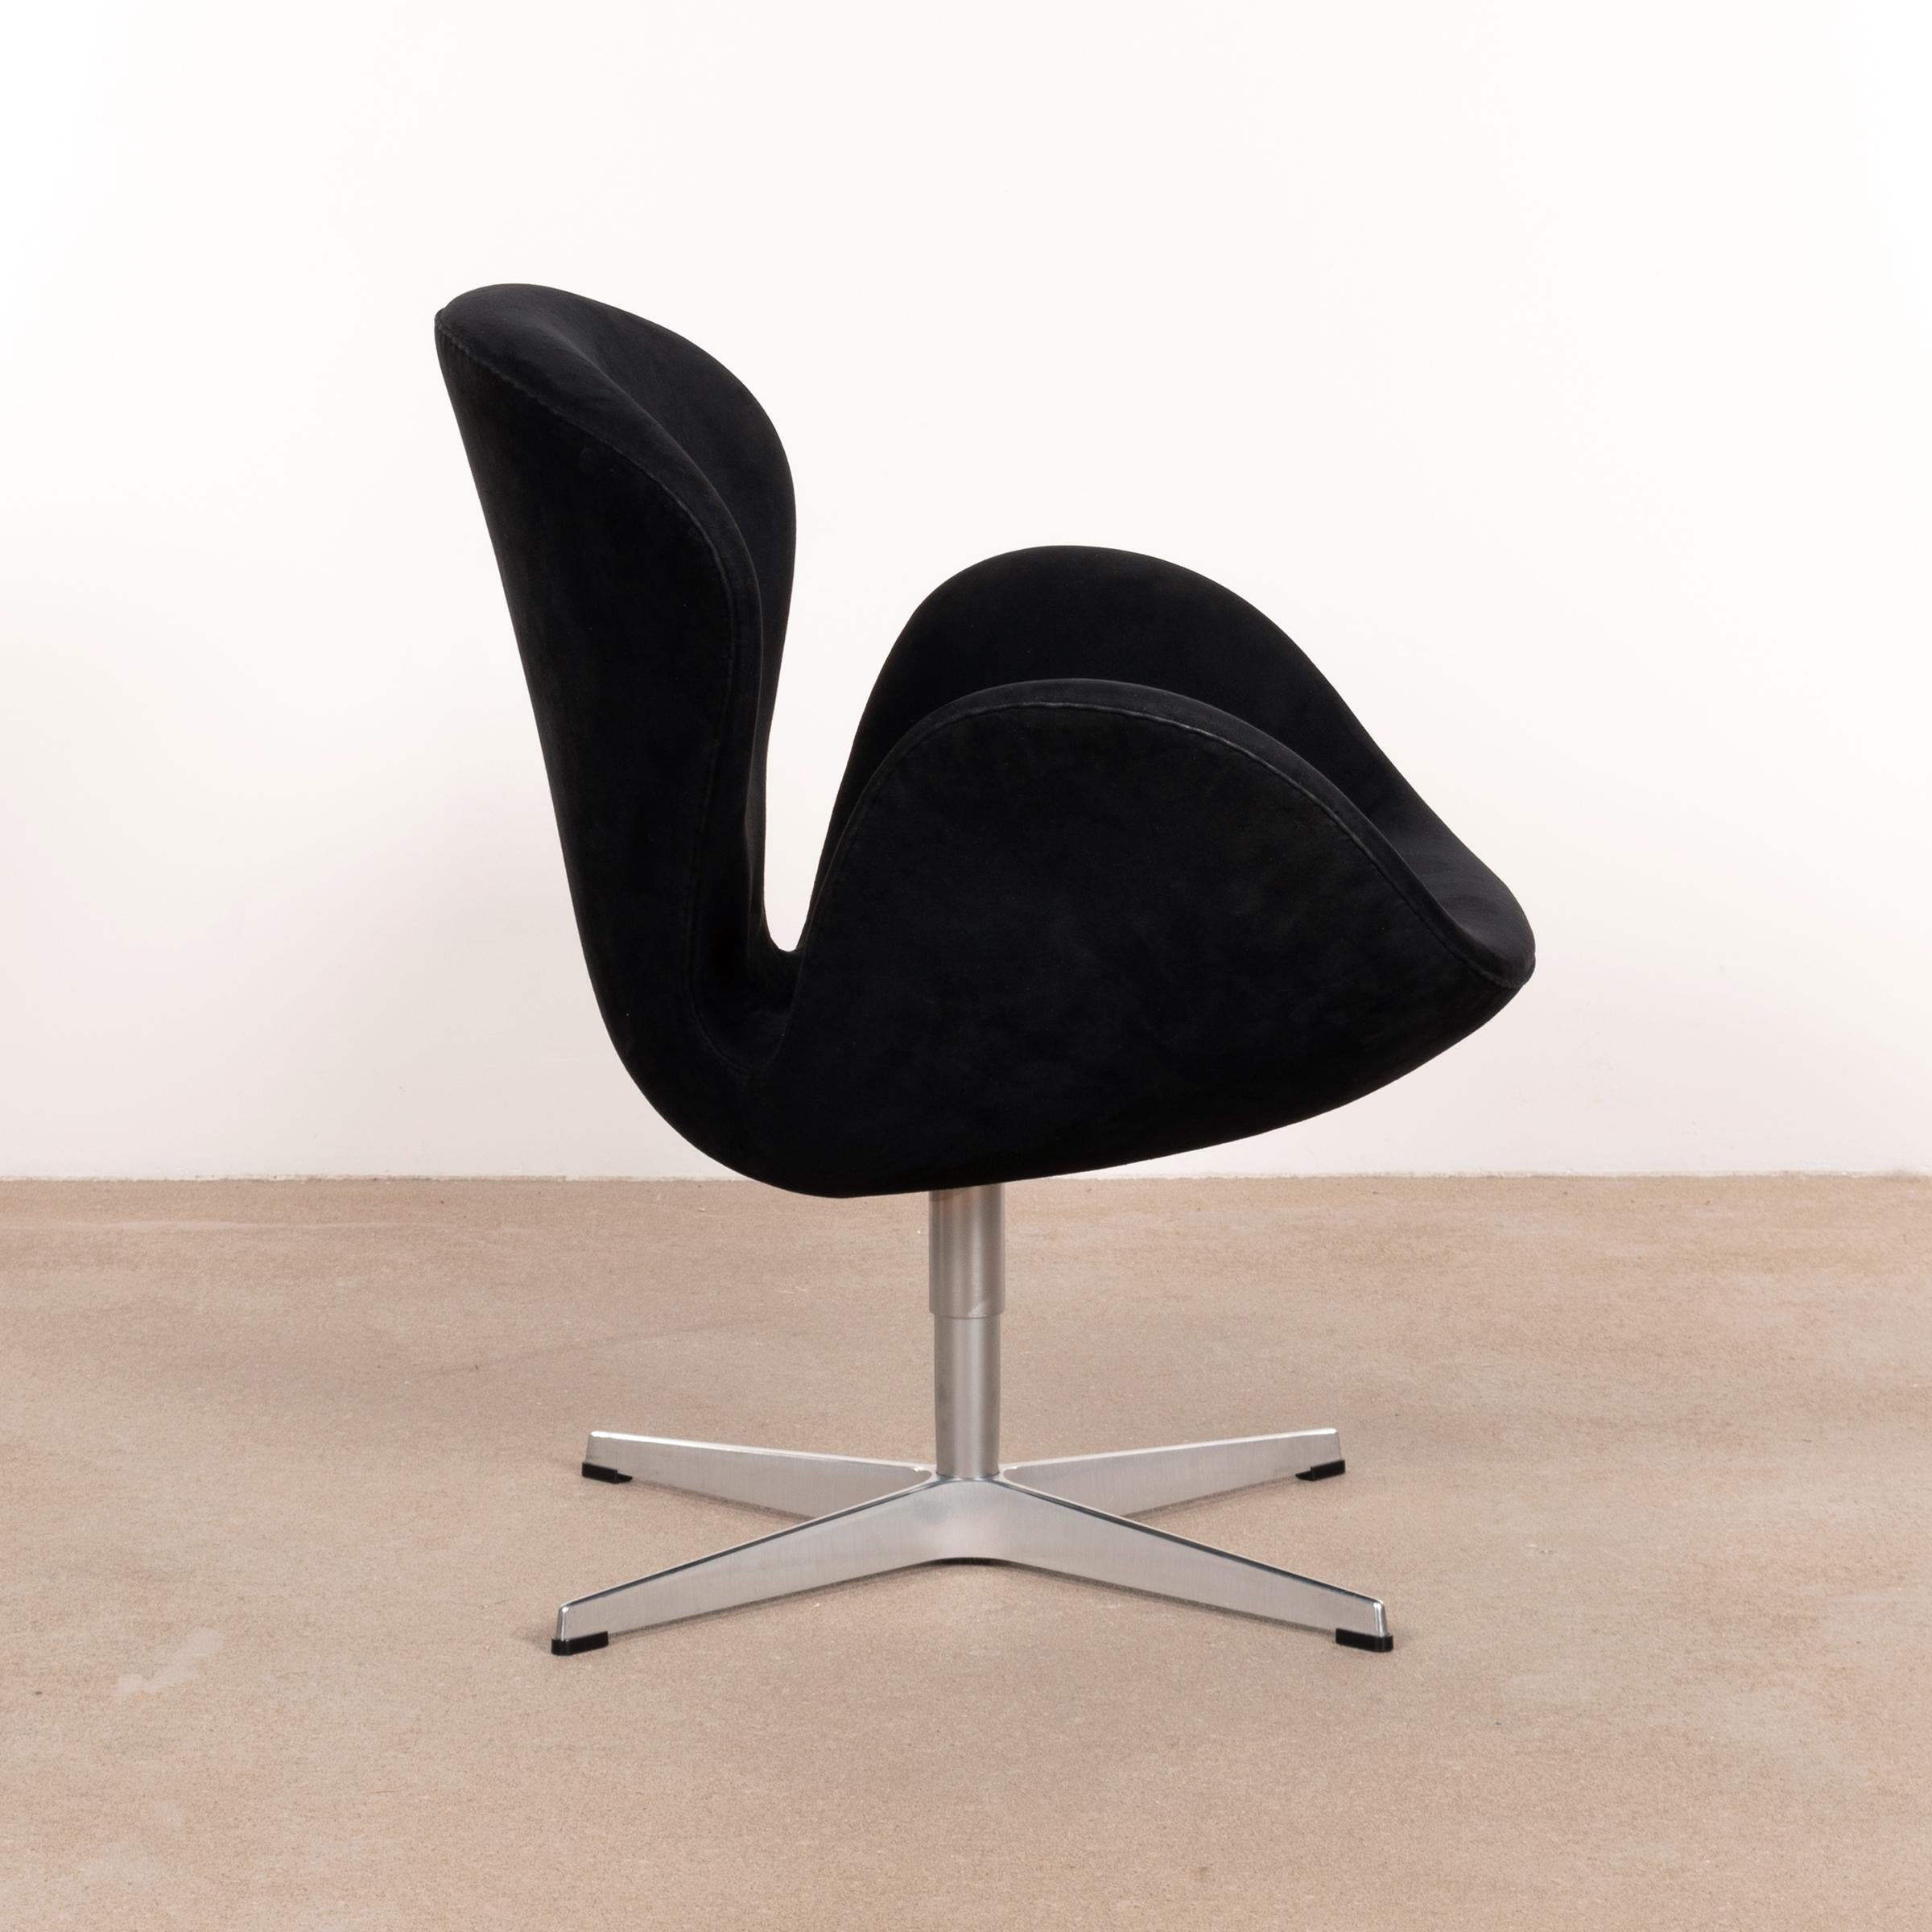 Danish Arne Jacobsen Swan Chair in Black Alcantara for Fritz Hansen, Denmark